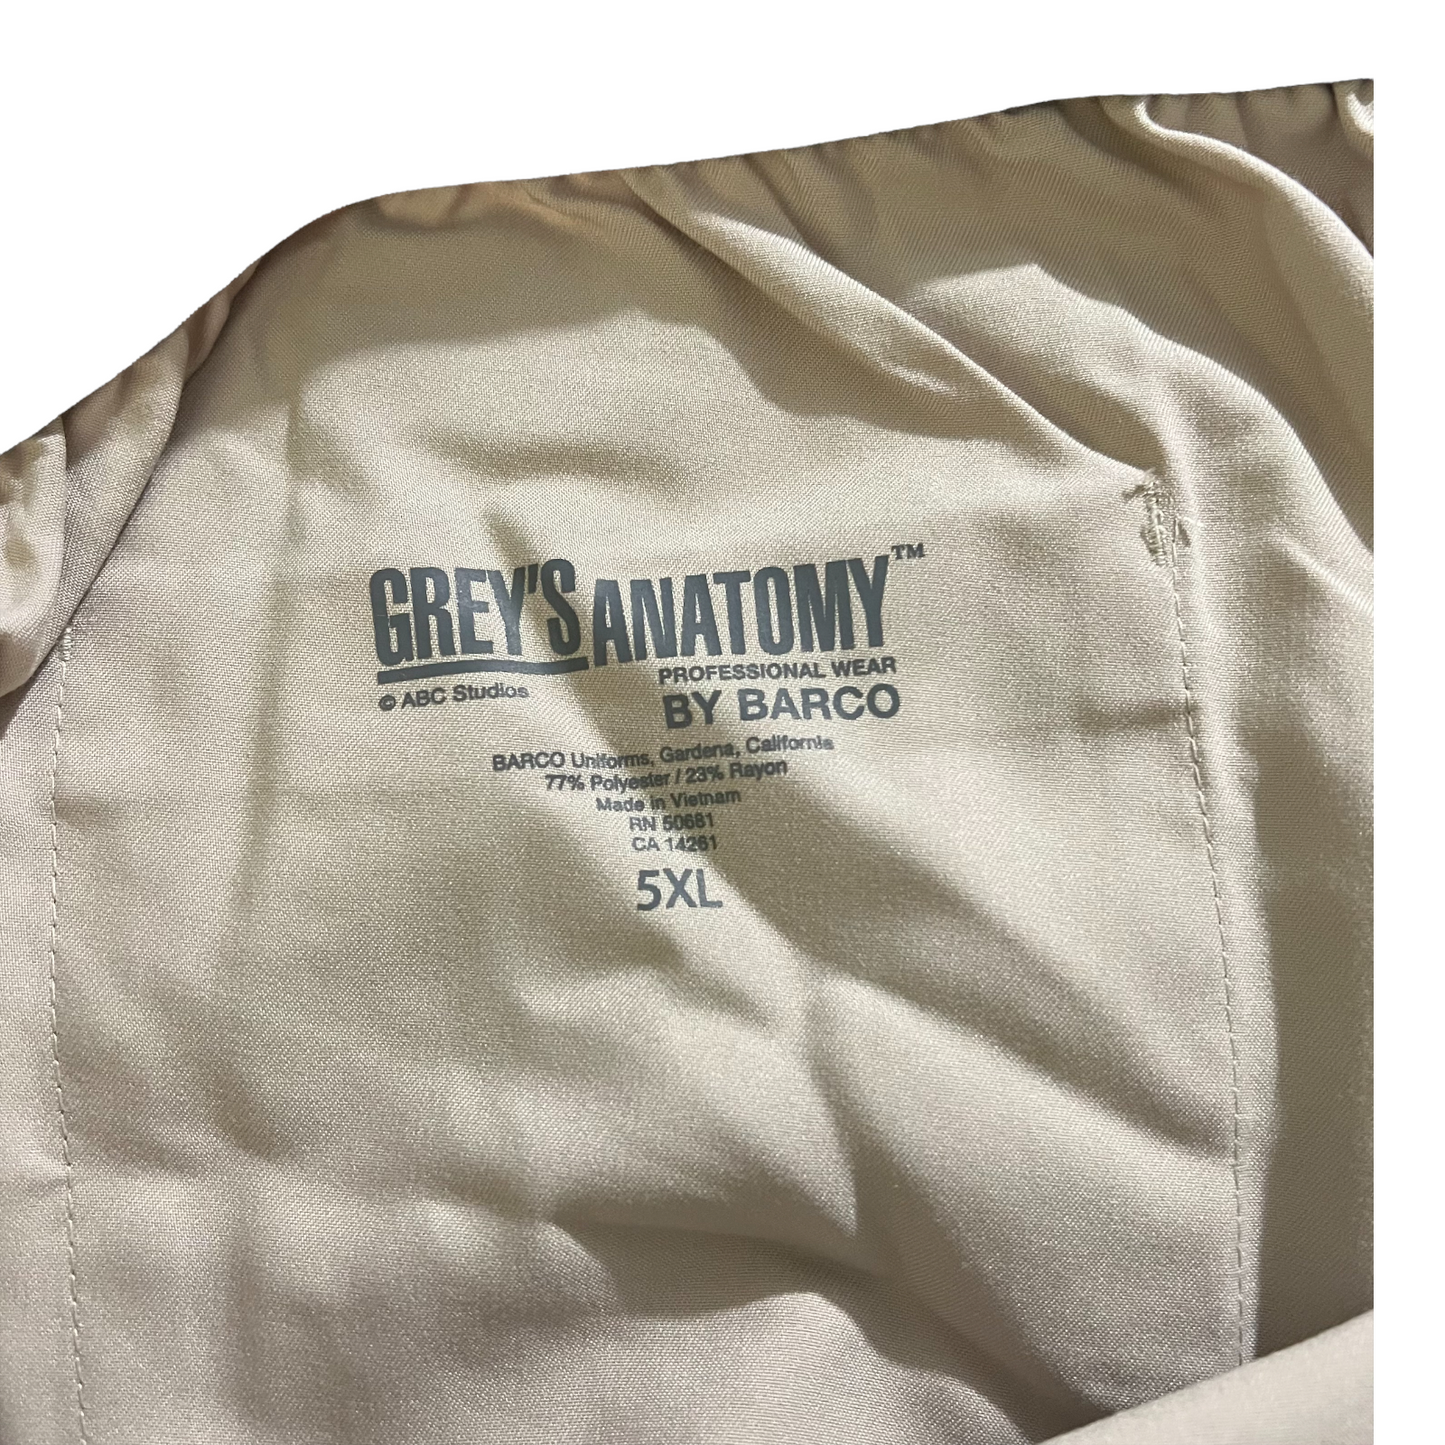 New Khaki Grey's Anatomy Scrubs Drawstring closure Fancy Pocket Size 5XL